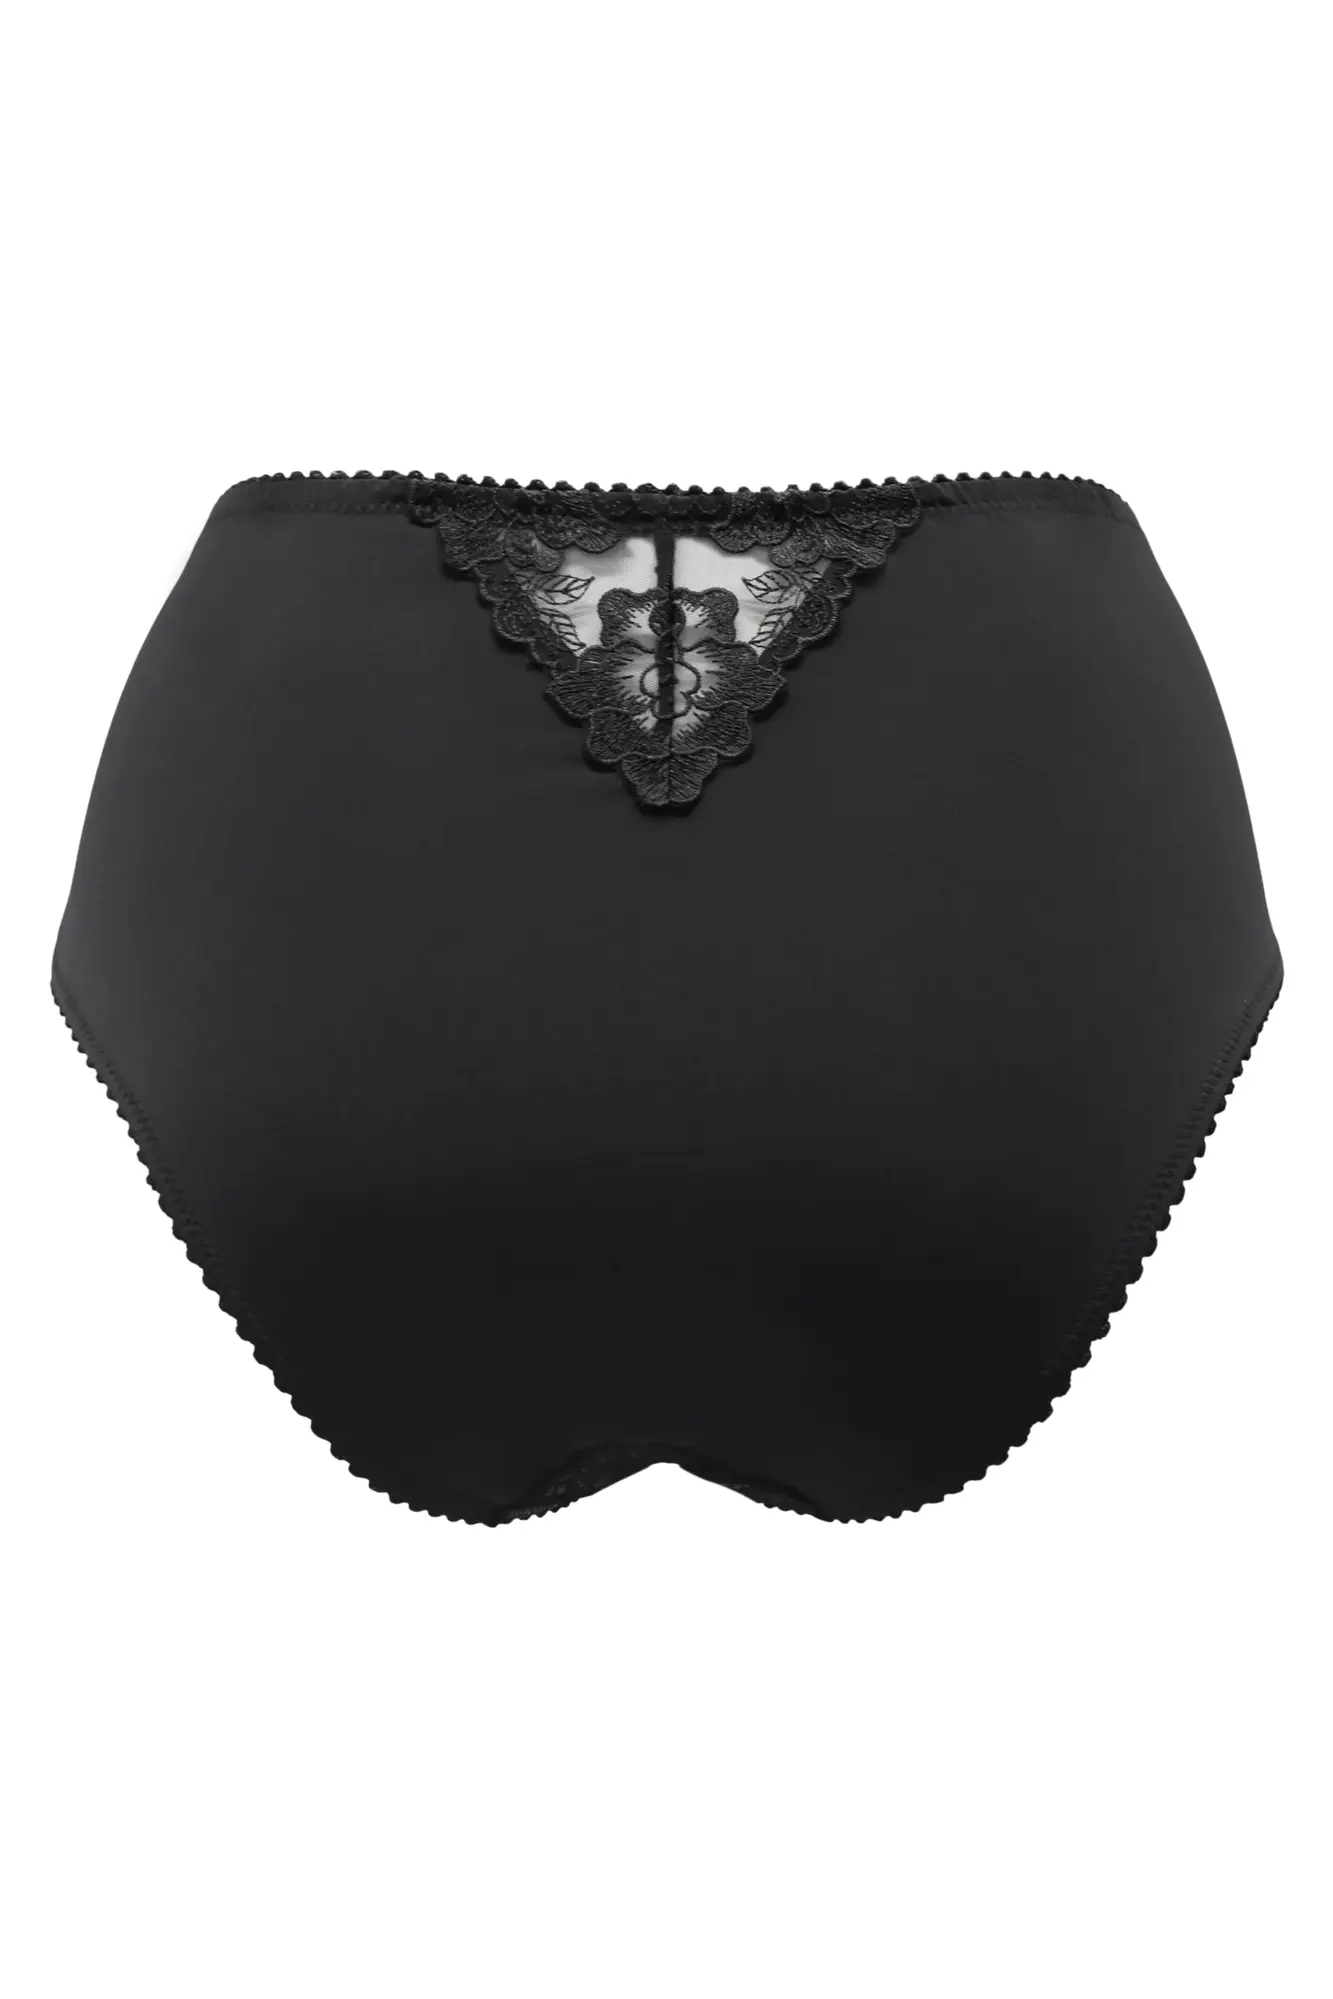 Black Lace Blush Overlay Bra - 40DDD – Le Prix Fashion & Consulting